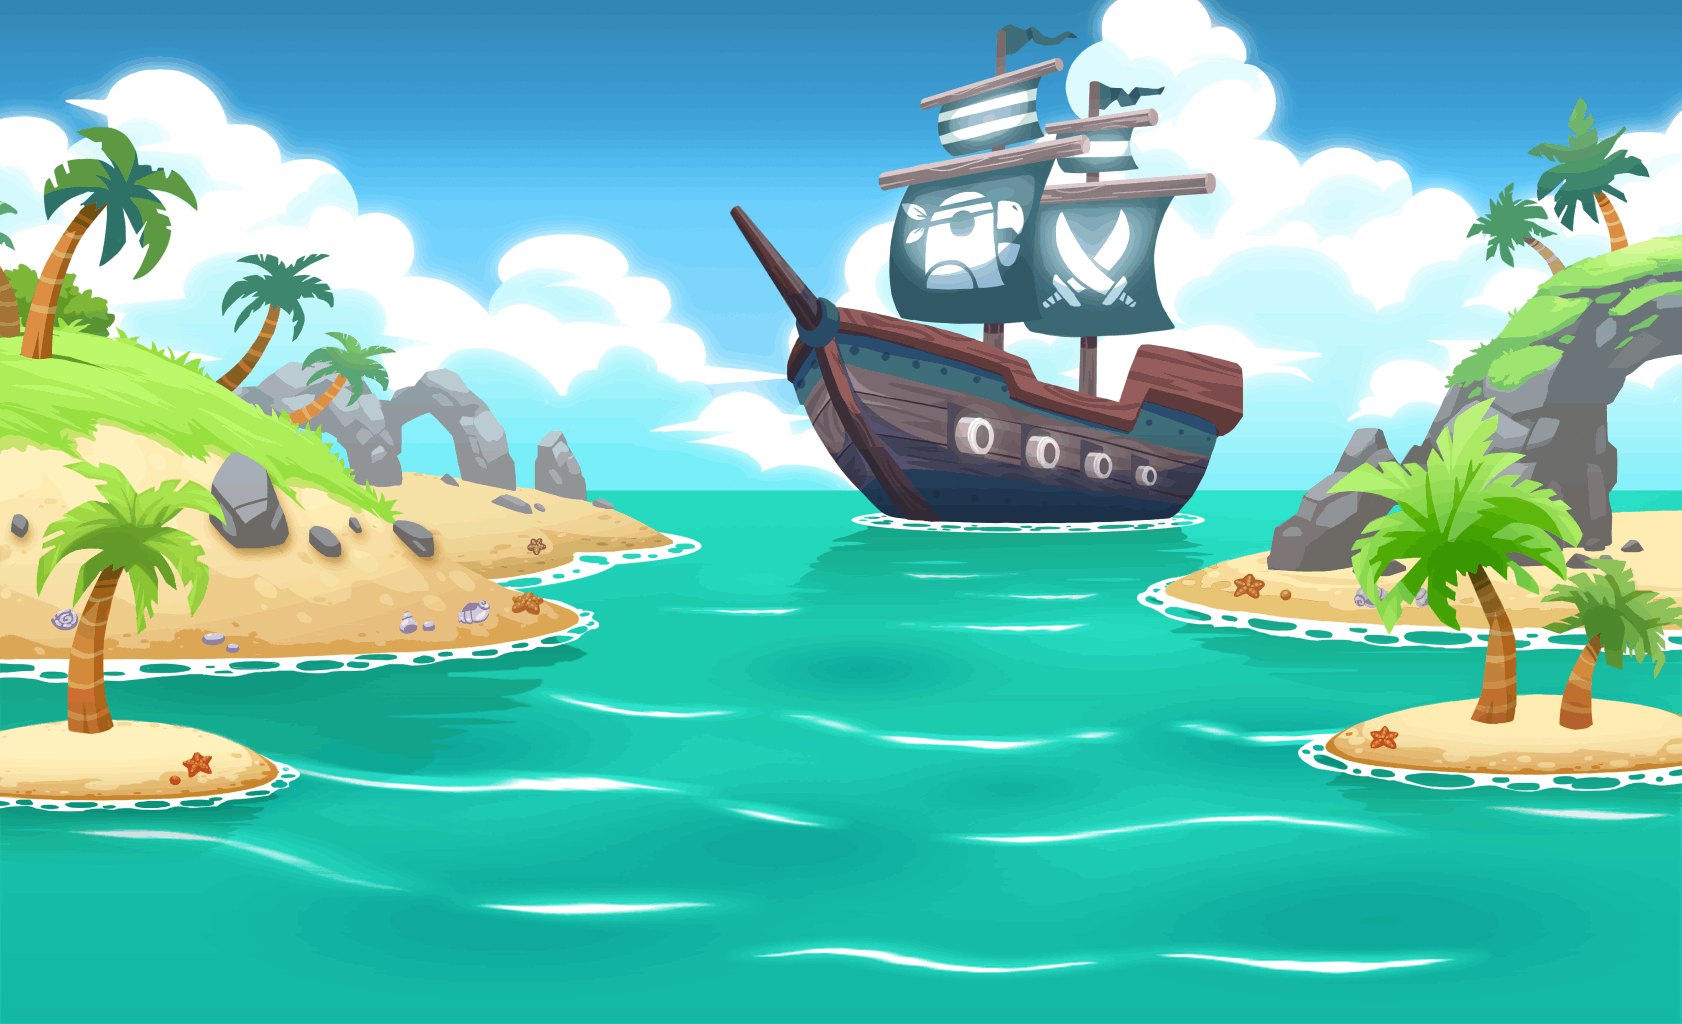 Остров пиратов для детей